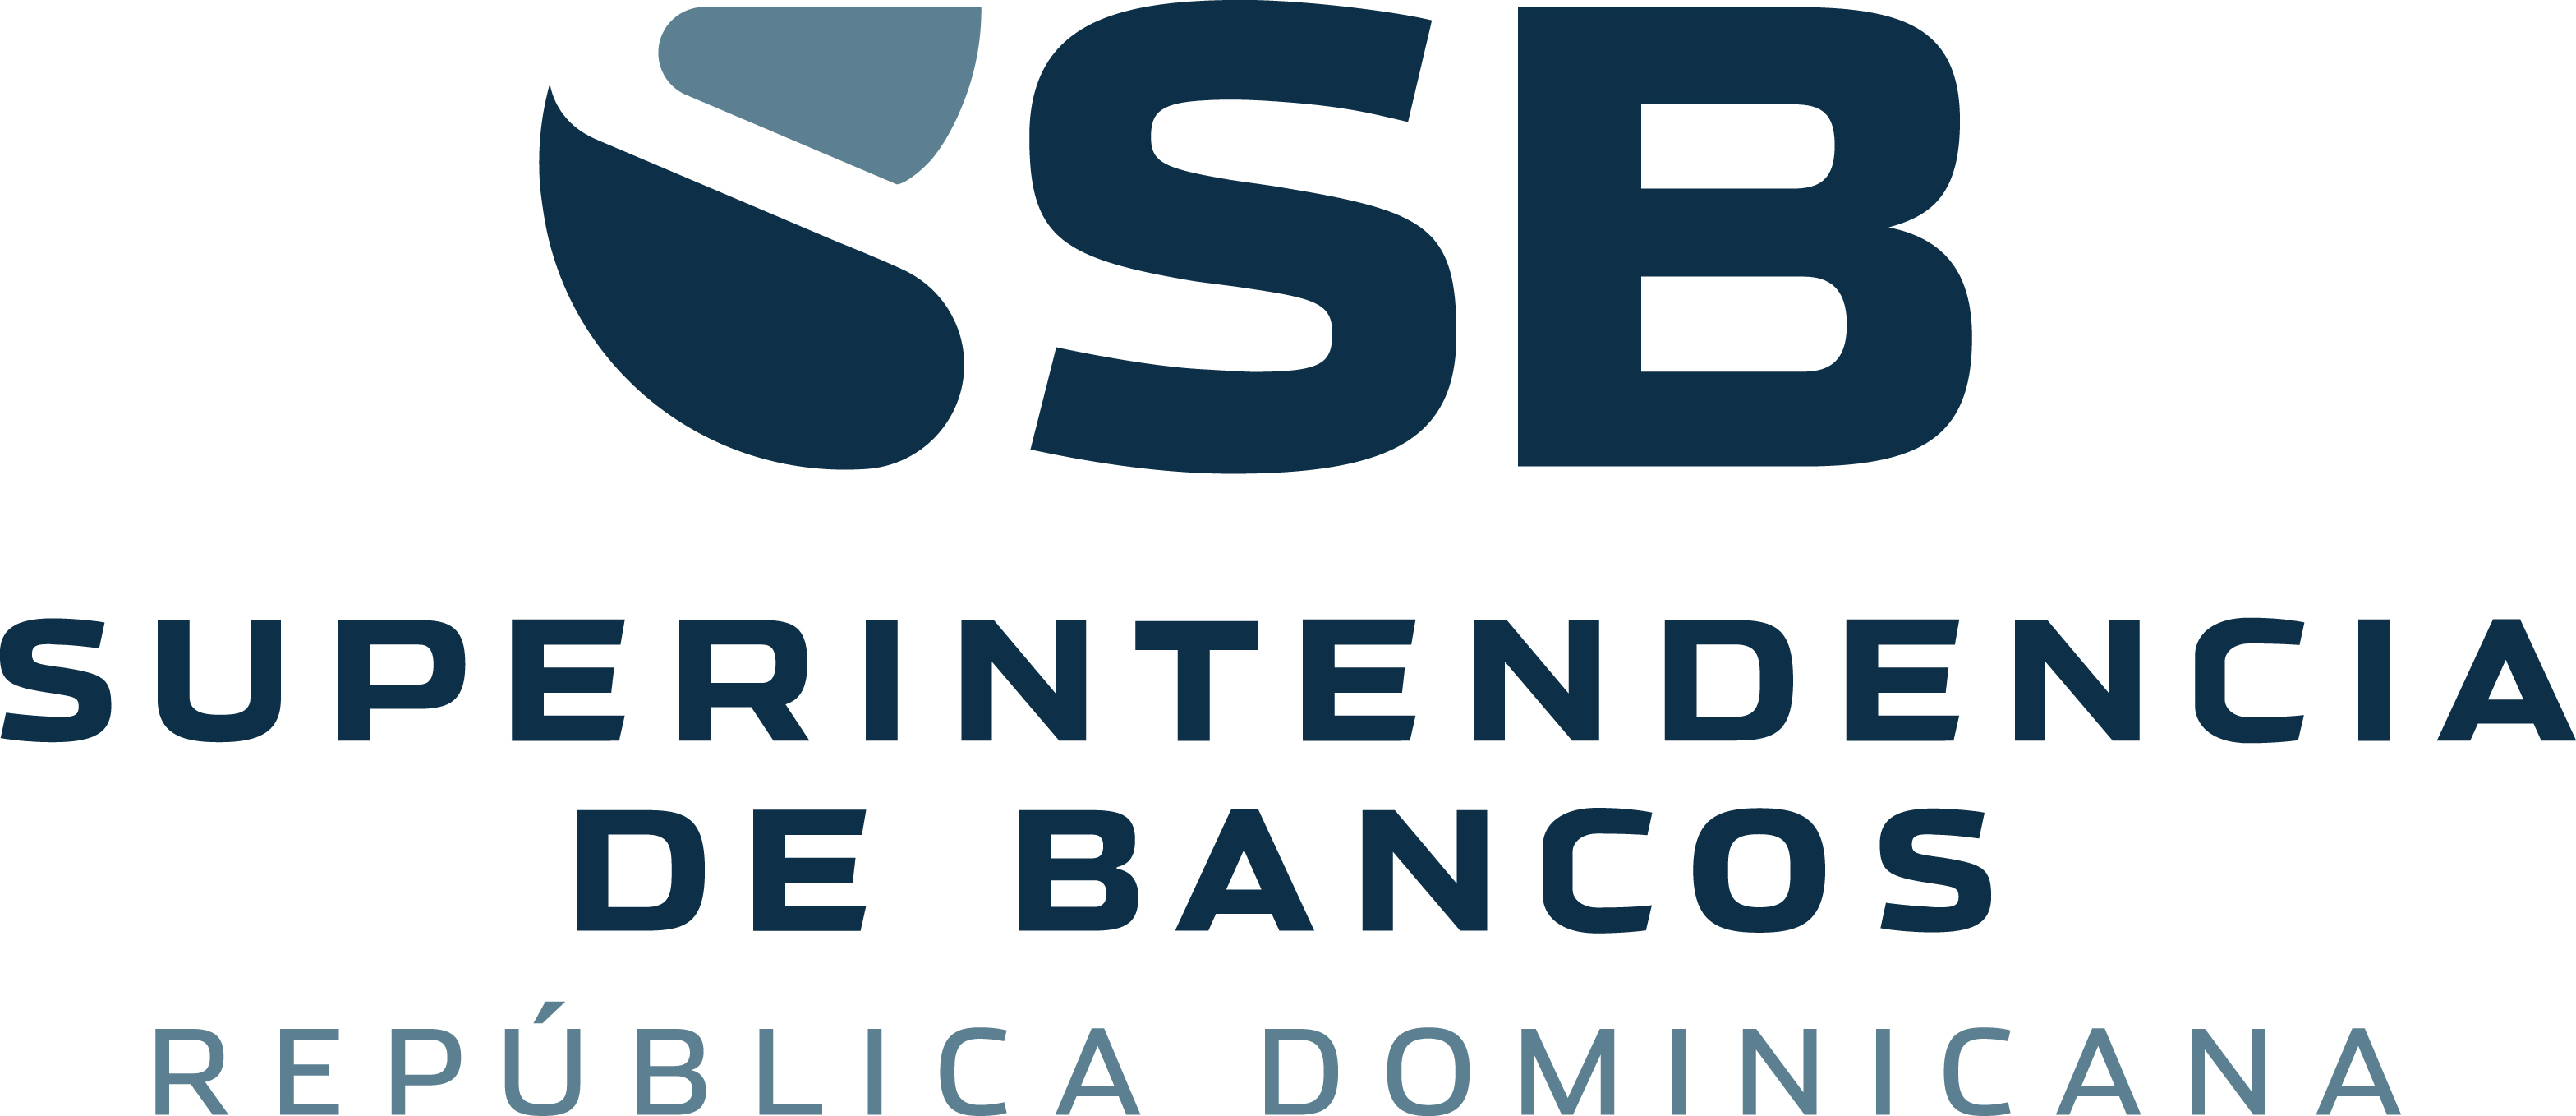 Superintendencia de Bancos de República Dominicana